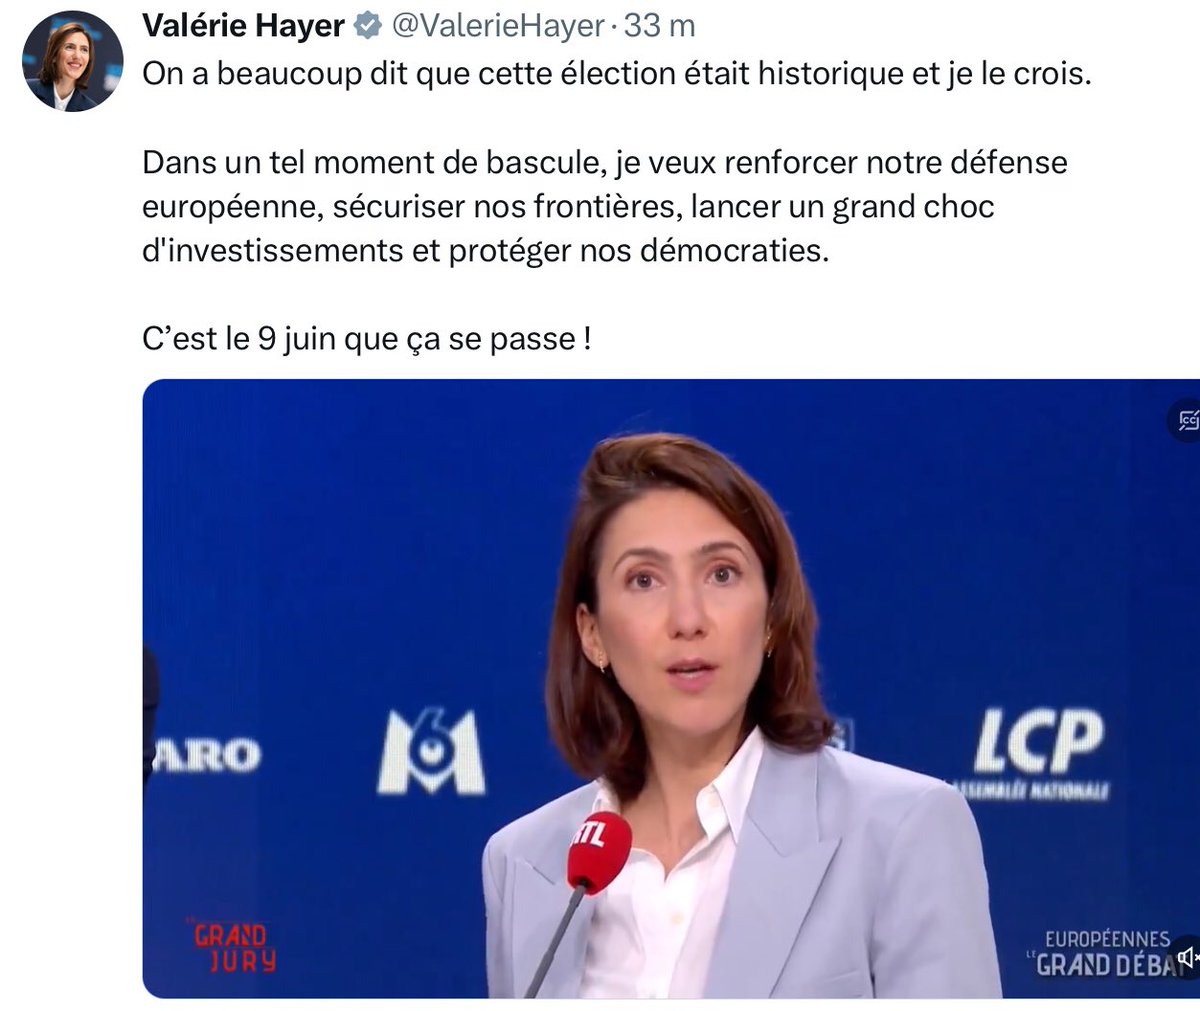 Valérie Hayer sent la Bérézina venir. Elle ressort le discours d’Emmanuel Macron en 2017. Elle est gelée sur place.

#LeGrandJury #LeGrandDebat